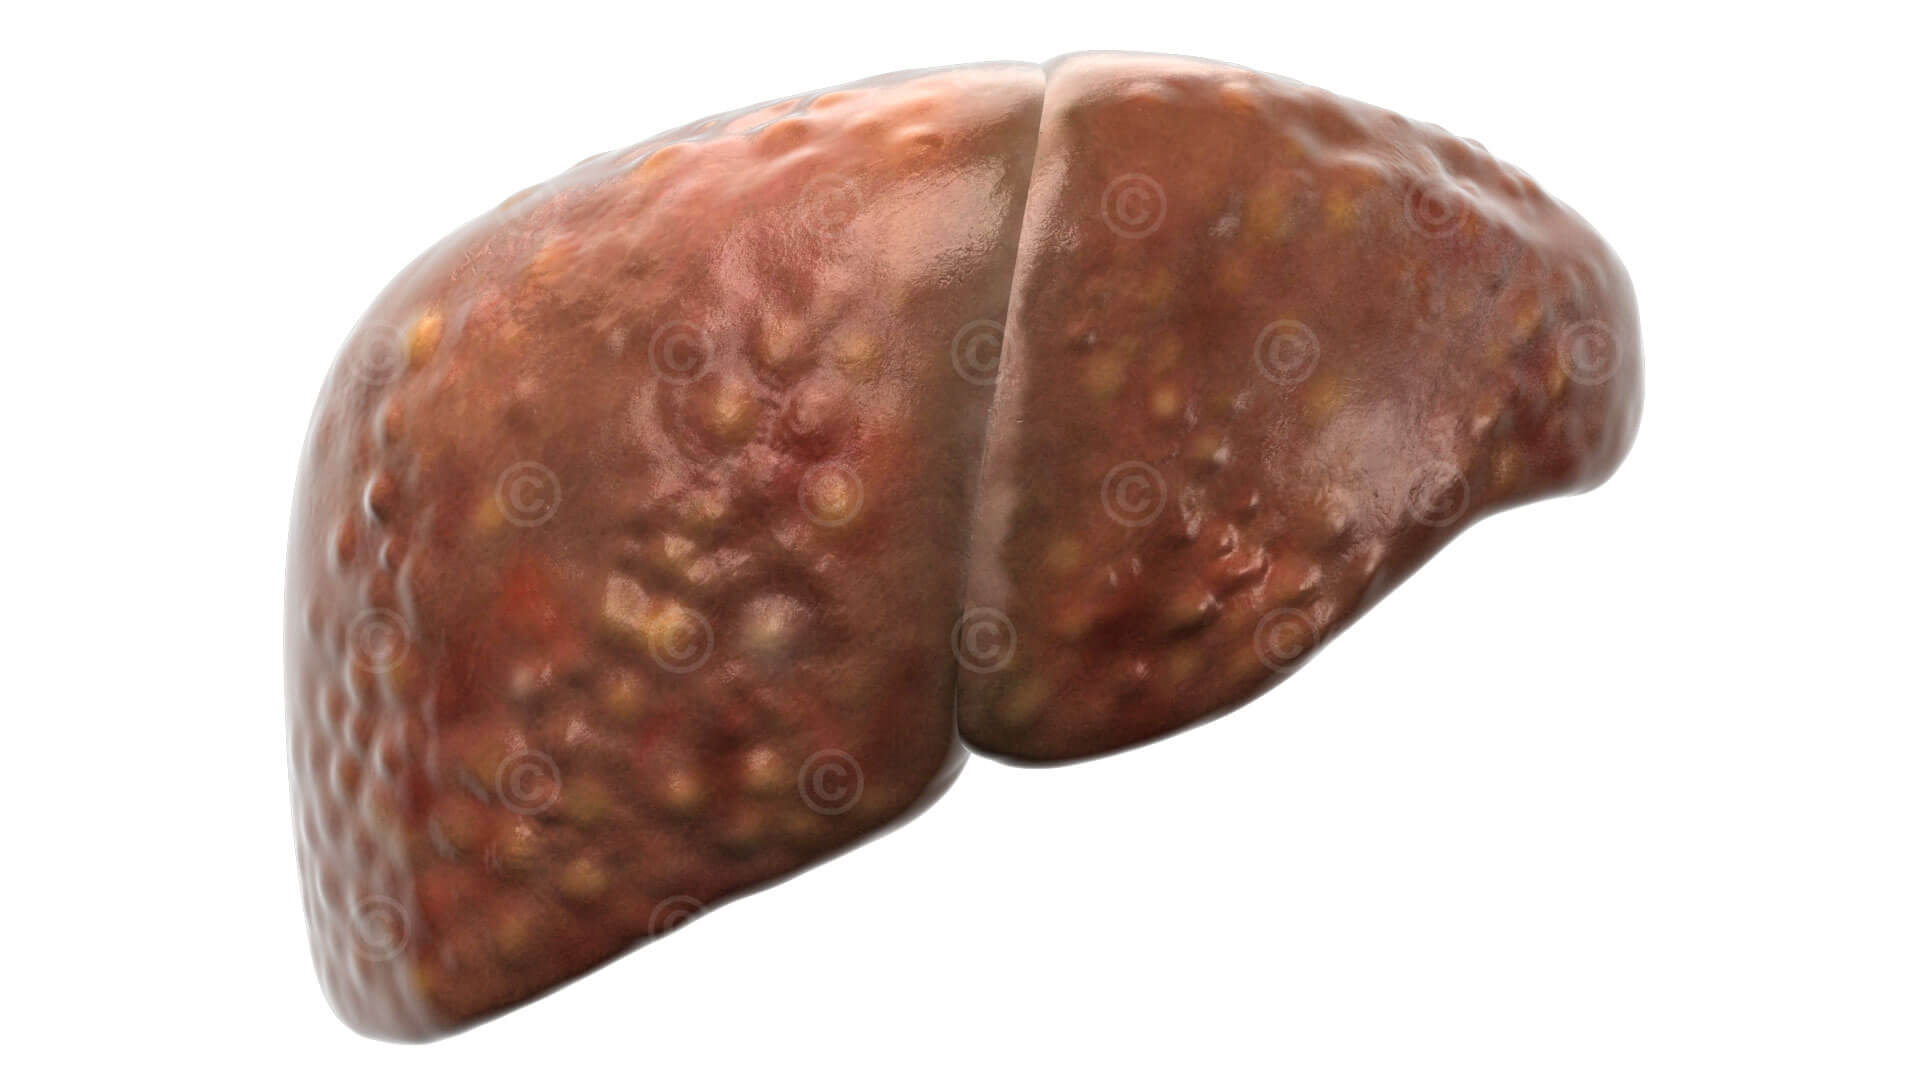 Liver fibrosis